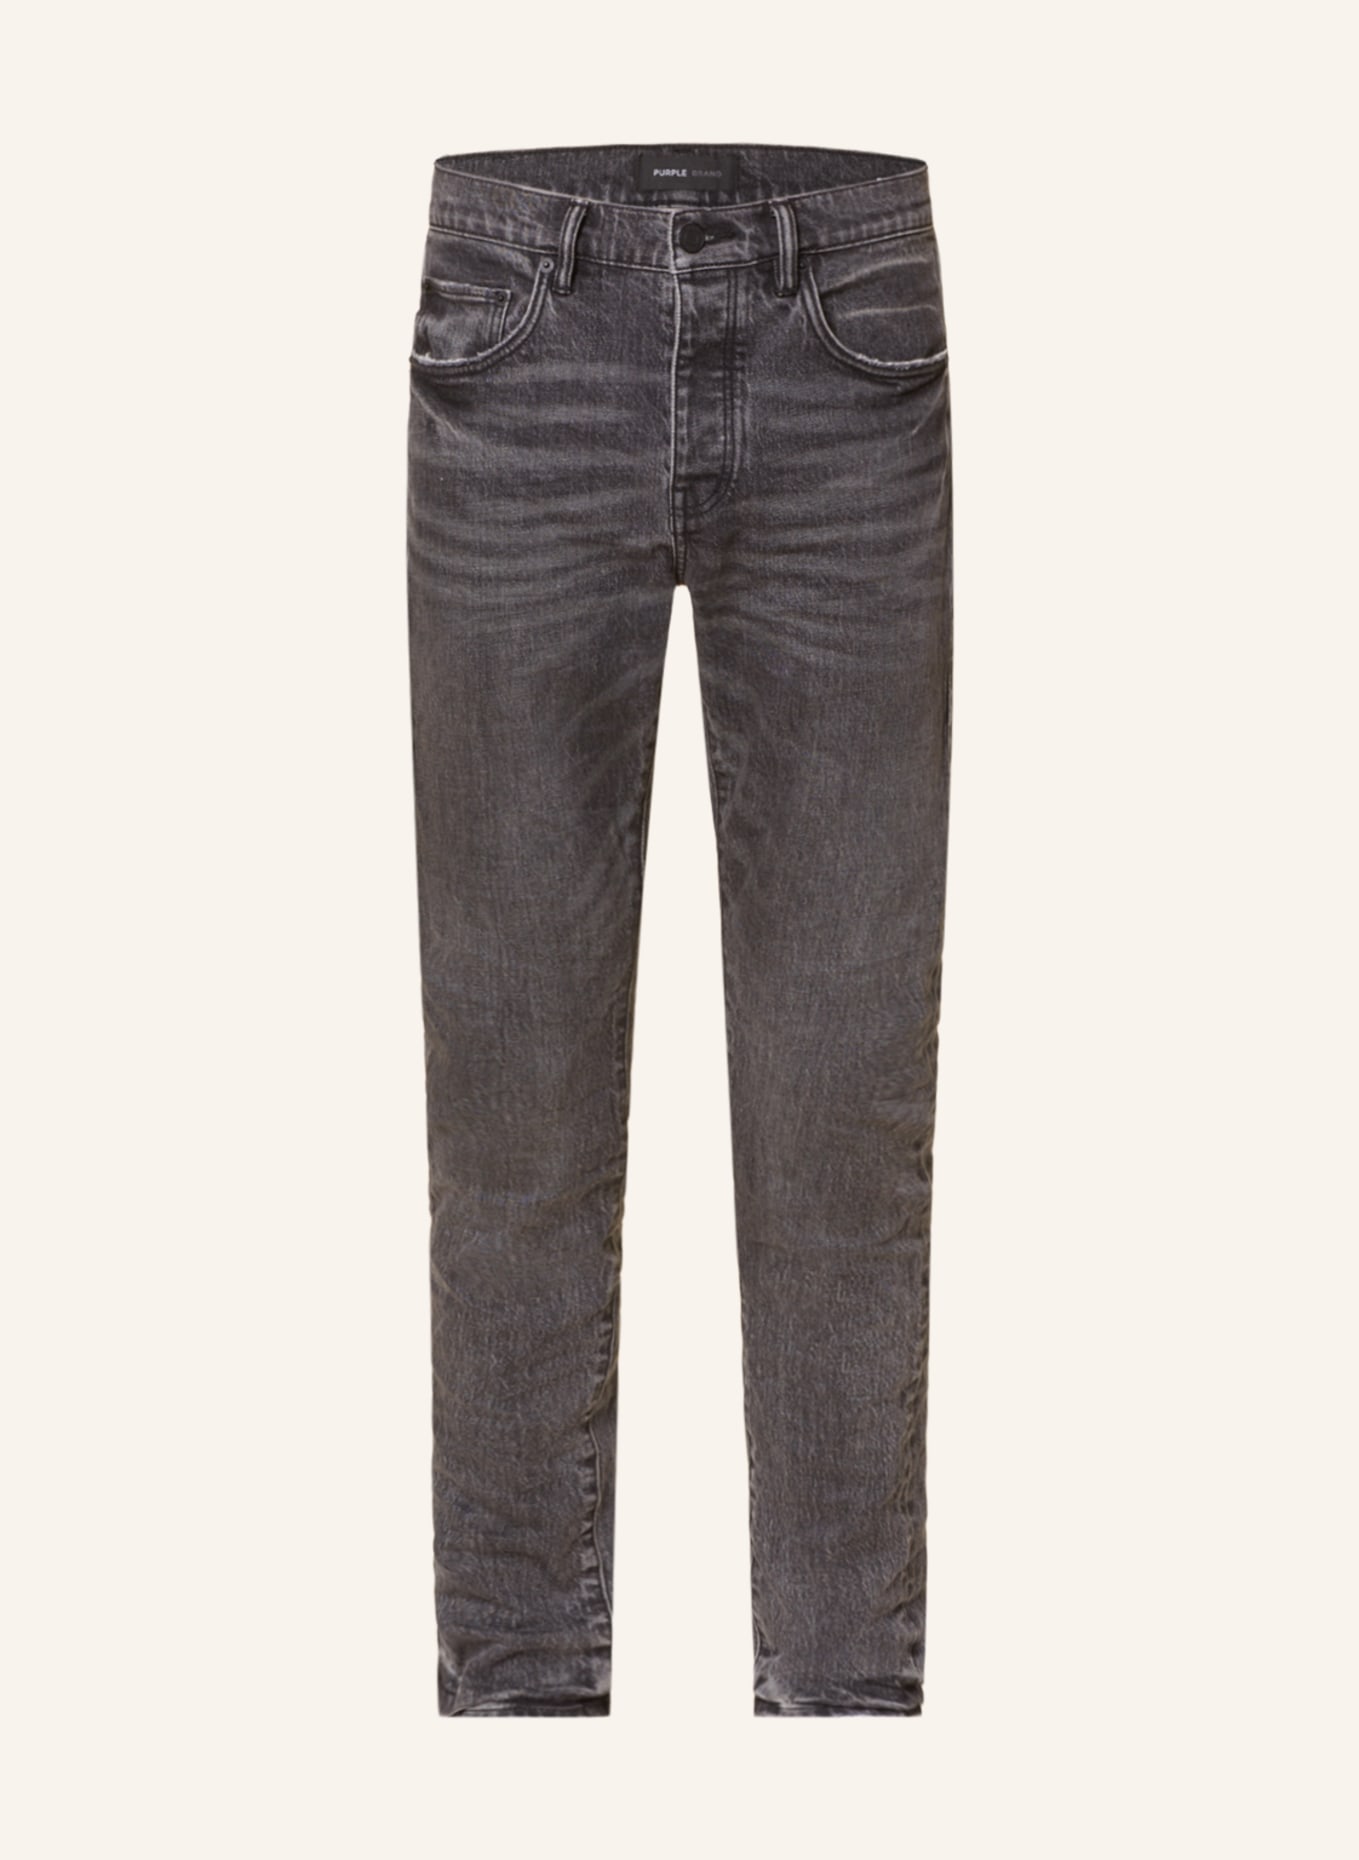 PURPLE BRAND Jeans Slim Fit, Farbe: NFSB WASHED BLACK (Bild 1)